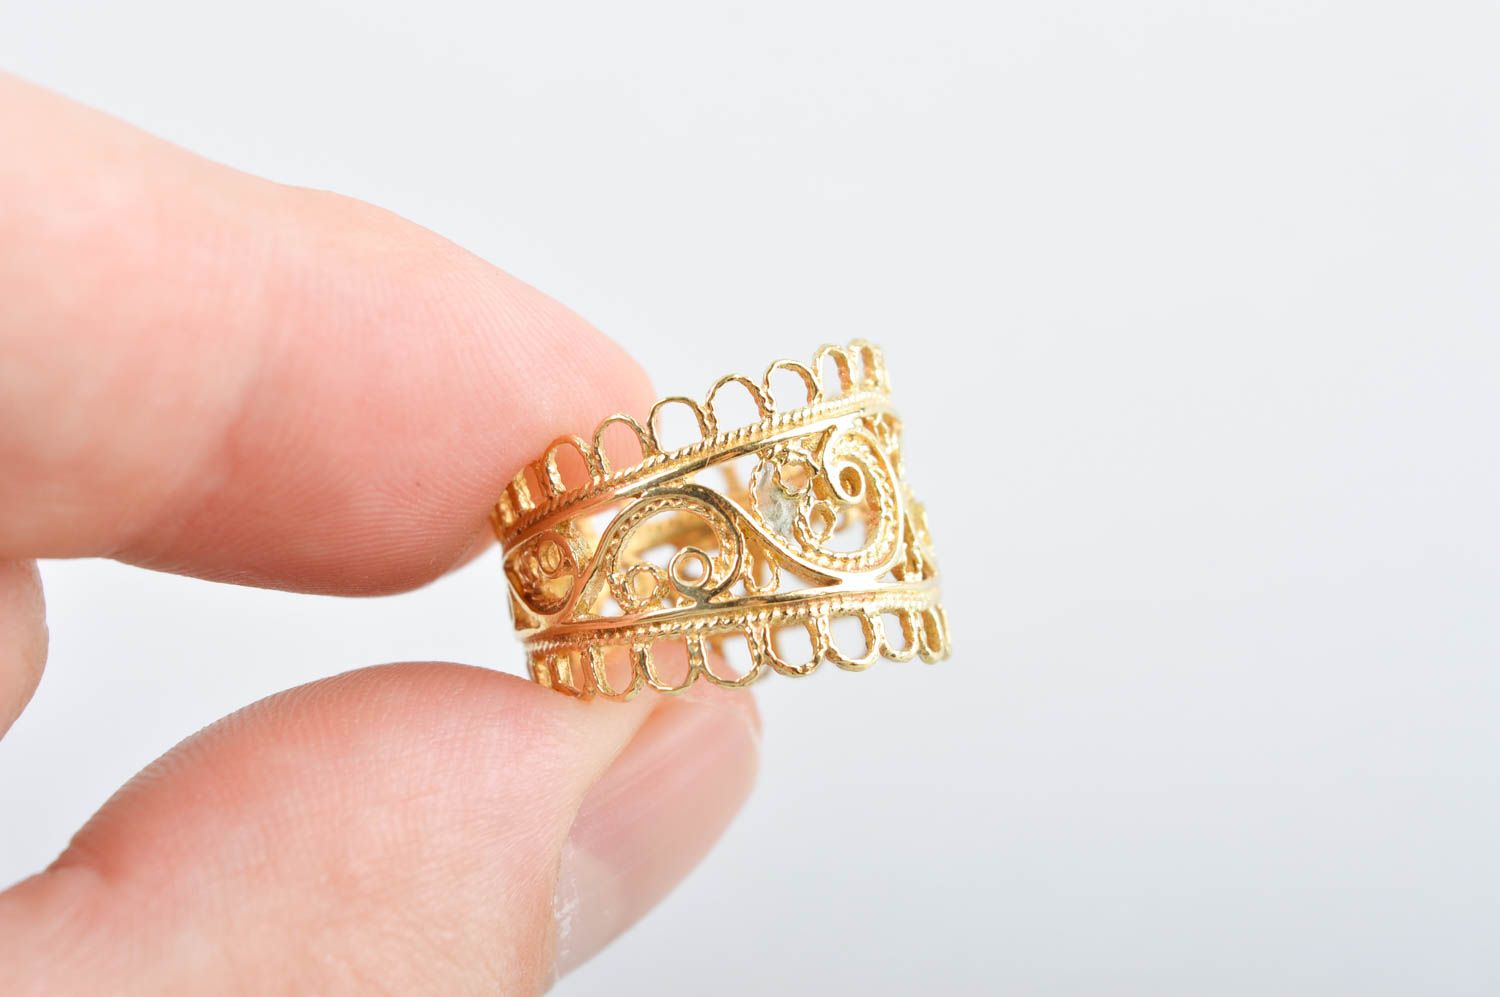 Кольцо ручной работы необычное украшение из латуни оригинальное модное кольцо  фото 4